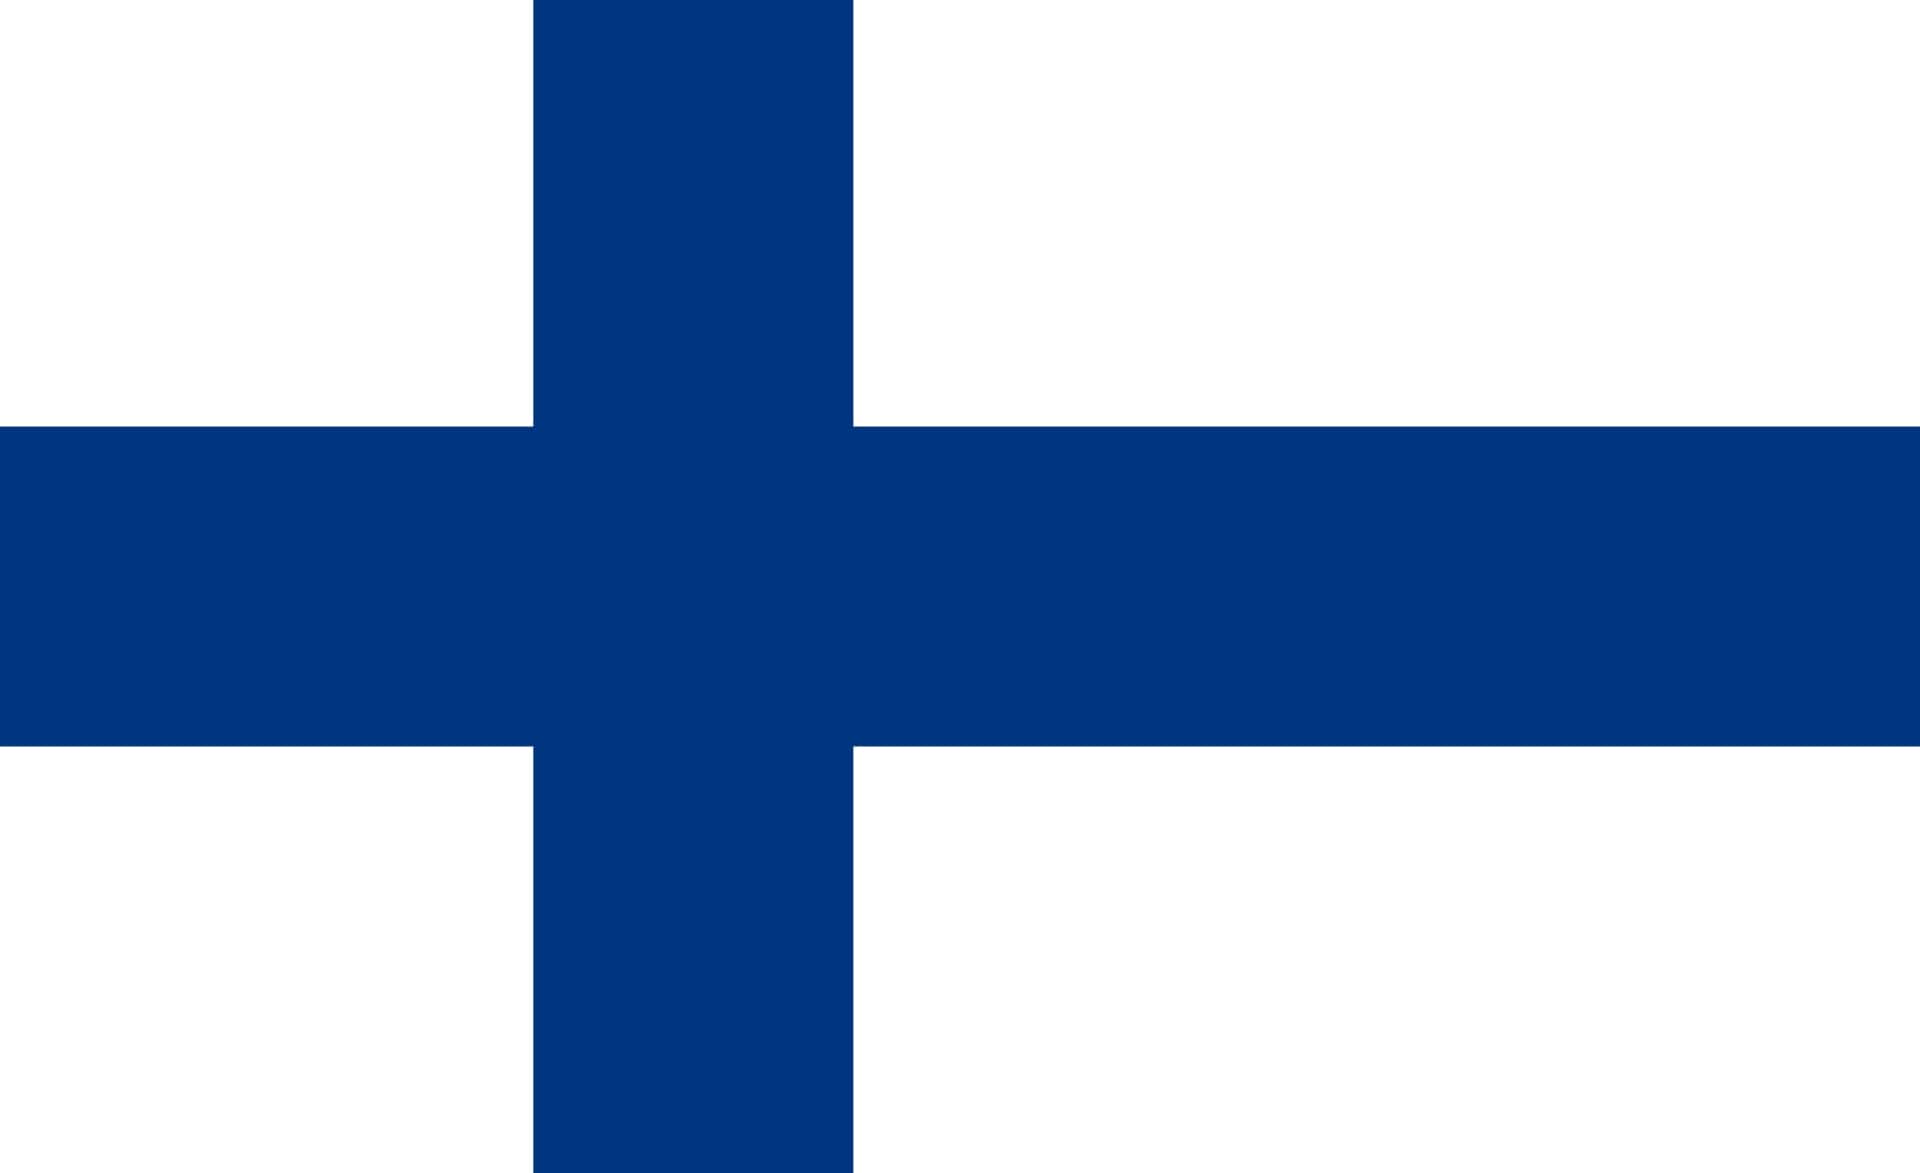 フィンランド国旗の色の意味とは？